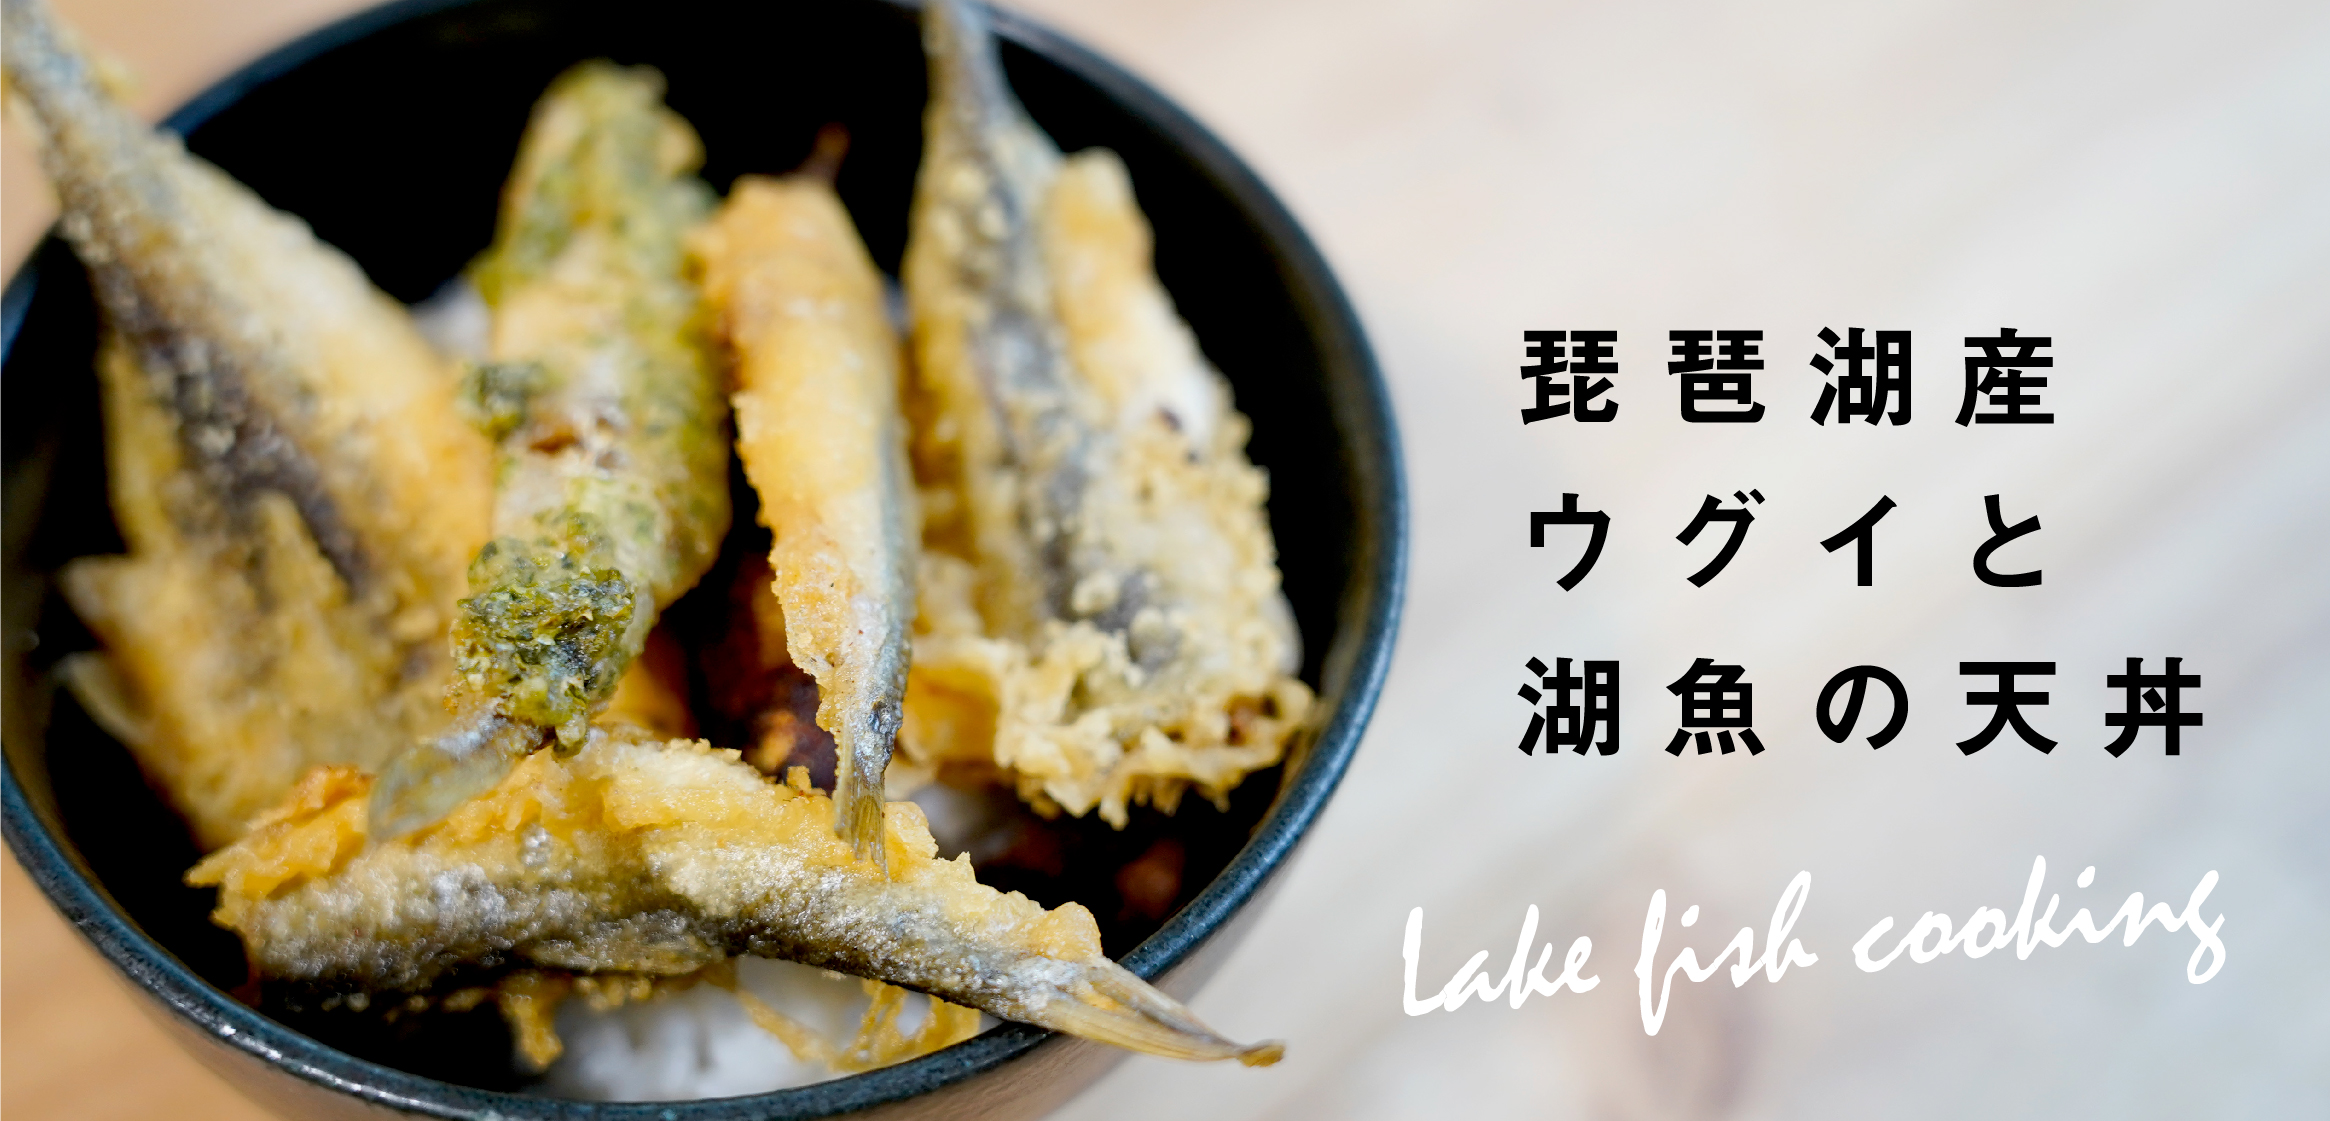 琵琶湖産のウグイを食べる ウグイと湖魚の天丼を作ってみた 日本ウグイ協会